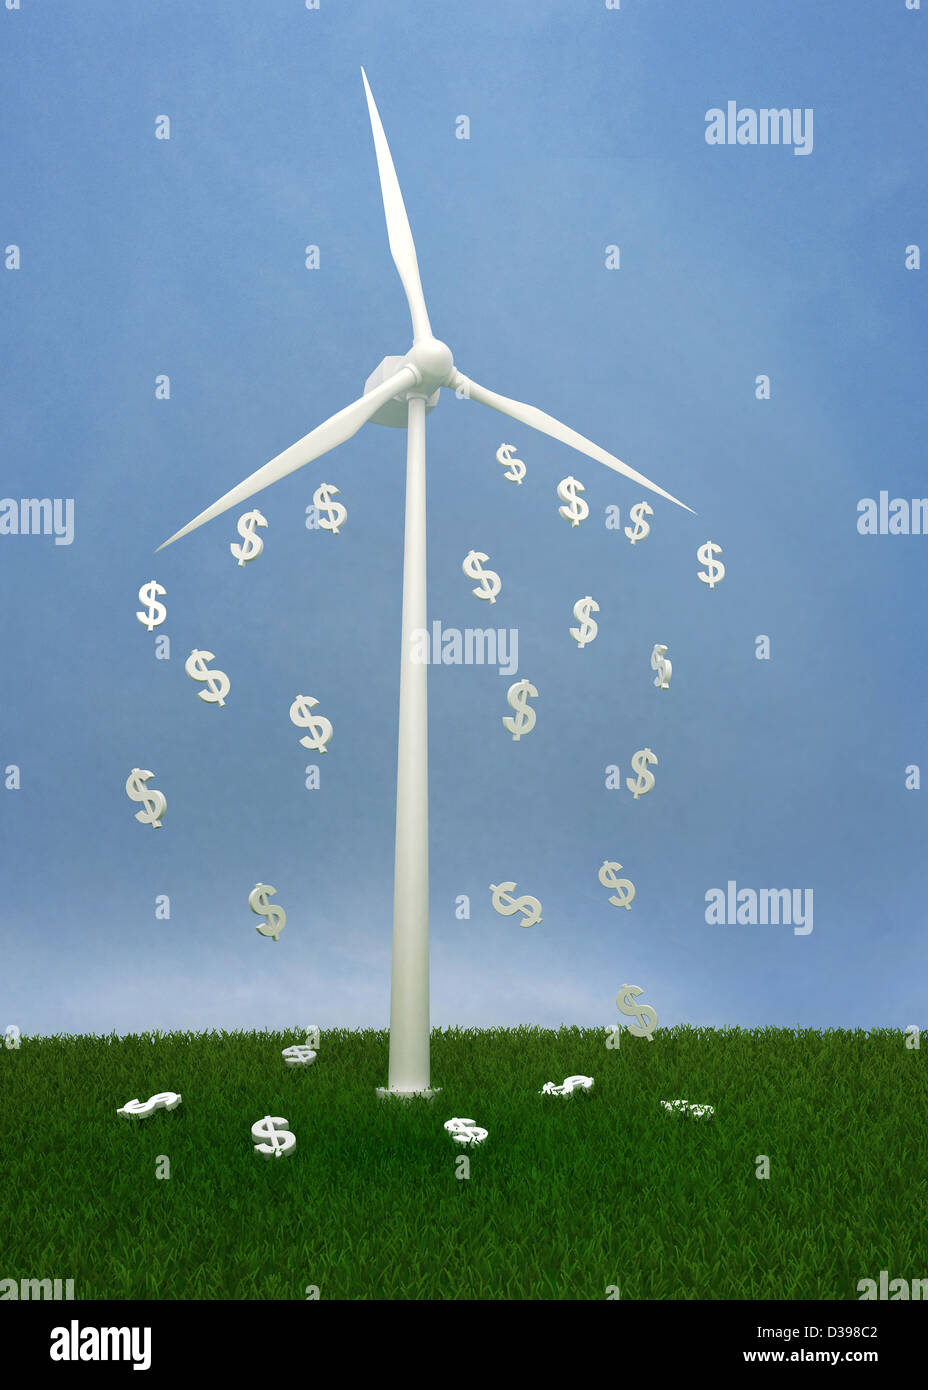 Il simbolo del dollaro in caduta da turbine eoliche contro il cielo chiaro che raffigura il concetto di profitto in ecologia Foto Stock